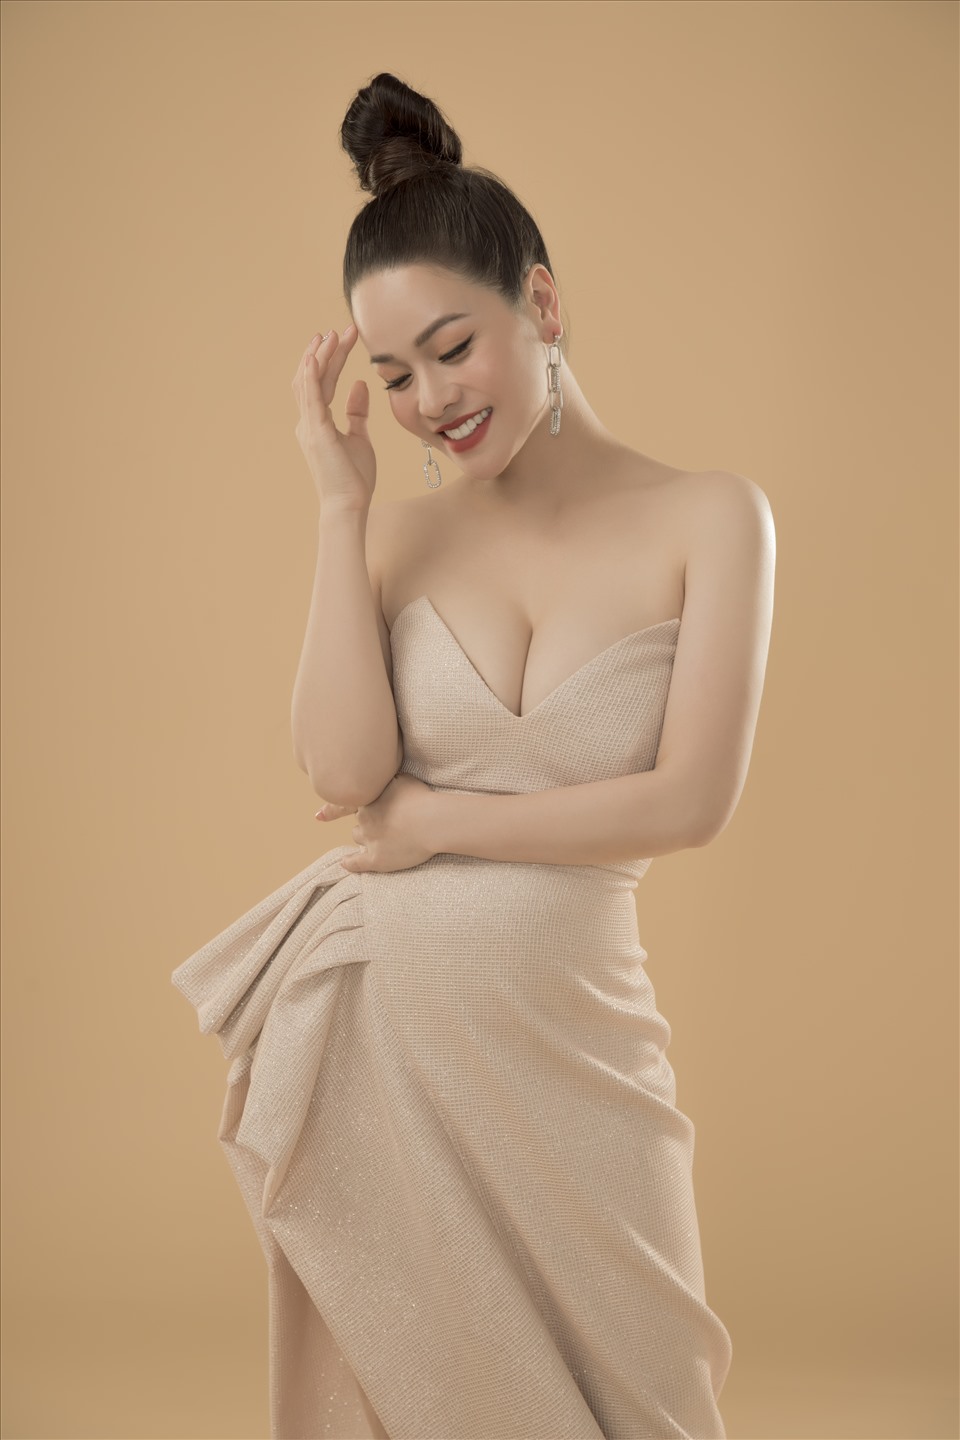 Có thể nói cô chính là một trong những ca sĩ - diễn viên xinh đẹp, tài năng của showbiz Việt được nhiều người mến mộ.Những bộ đầm dạ hội các người đẹp mặc có chất liệu lụa và gấm nhập Hàn Quốc.